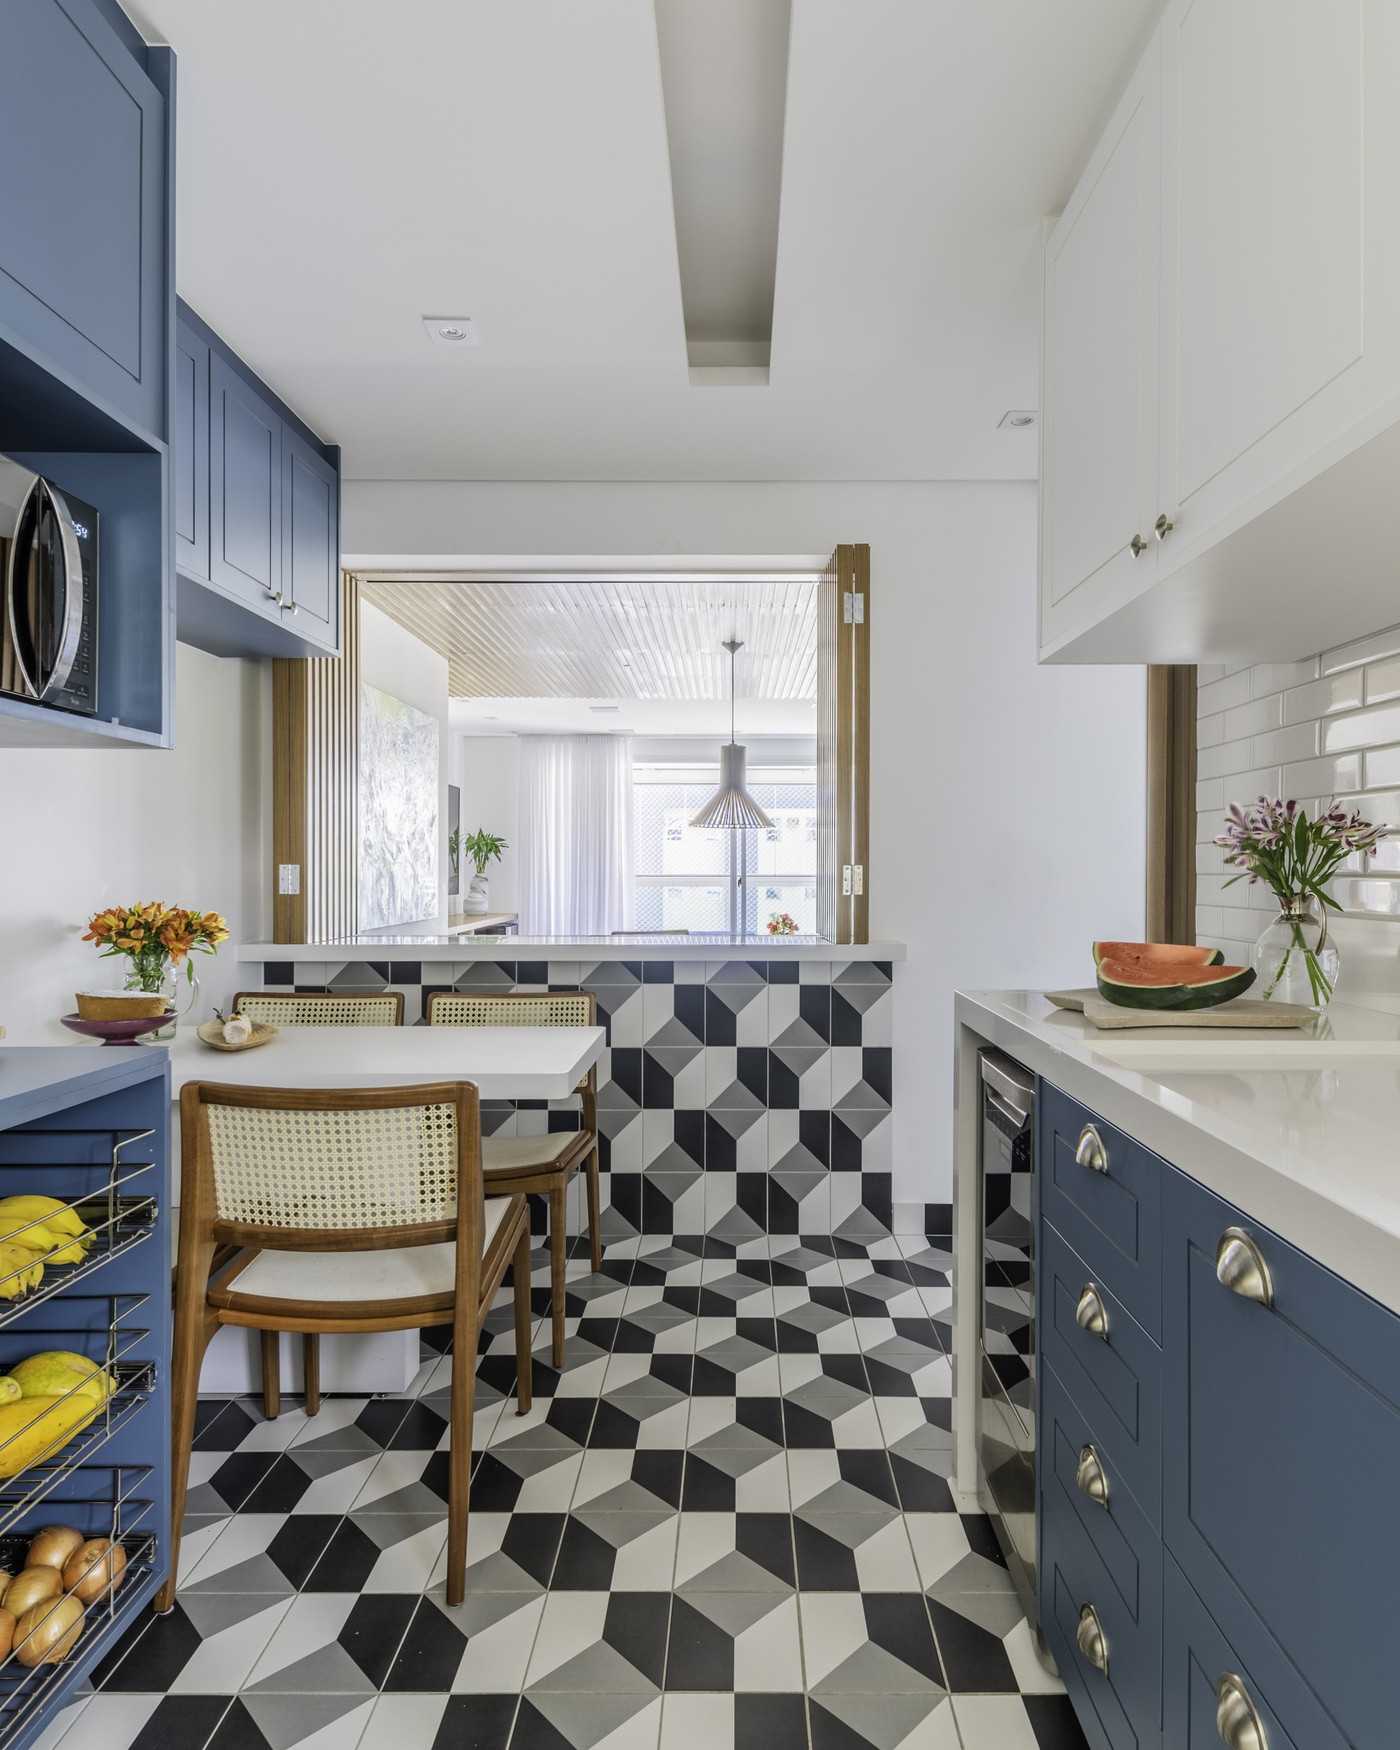 Décor do dia: cozinha com armários azuis tem mix de revestimentos (Foto: Guilherme Pucci)